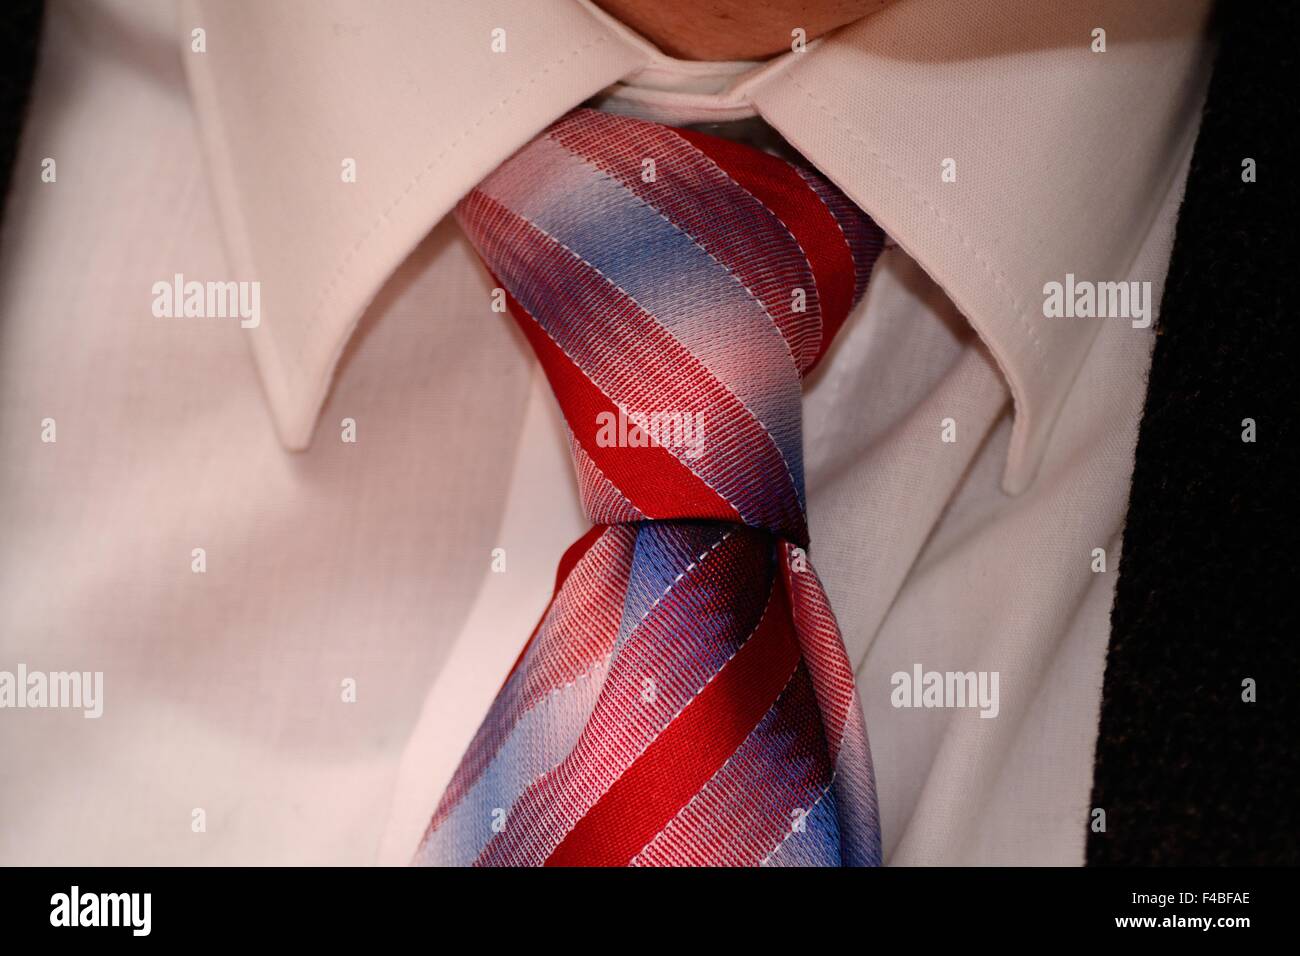 Status Symbol Tie - close-up Stock Photo